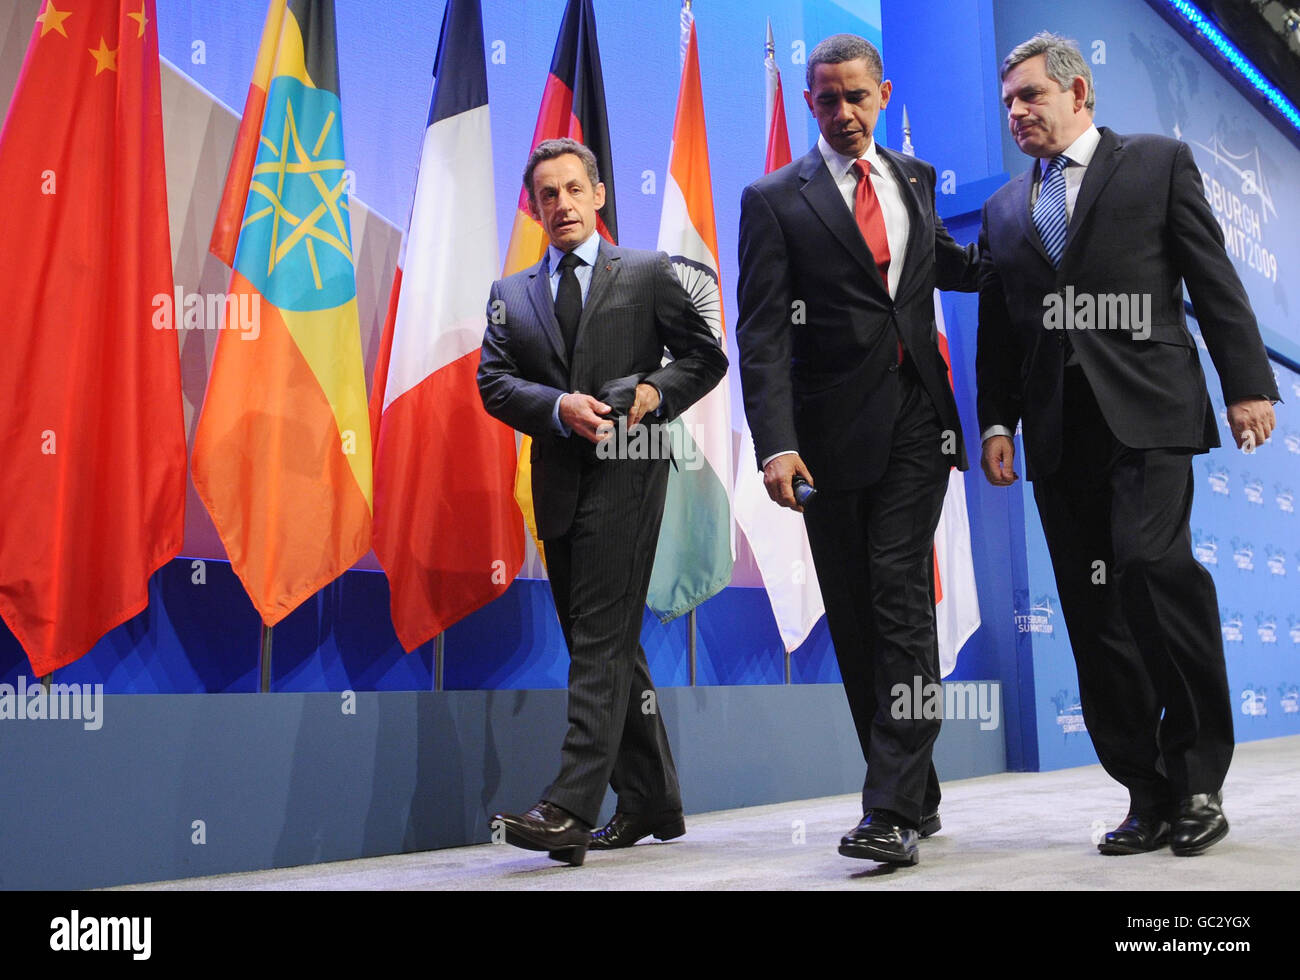 Il primo ministro Gordon Brown lascia oggi la scena al vertice del G20 a Pittsburgh con il presidente Barack Obama e il presidente Nicholas Sarkozy dopo aver fatto una dichiarazione sulla capacità nucleare iraniana. Foto Stock